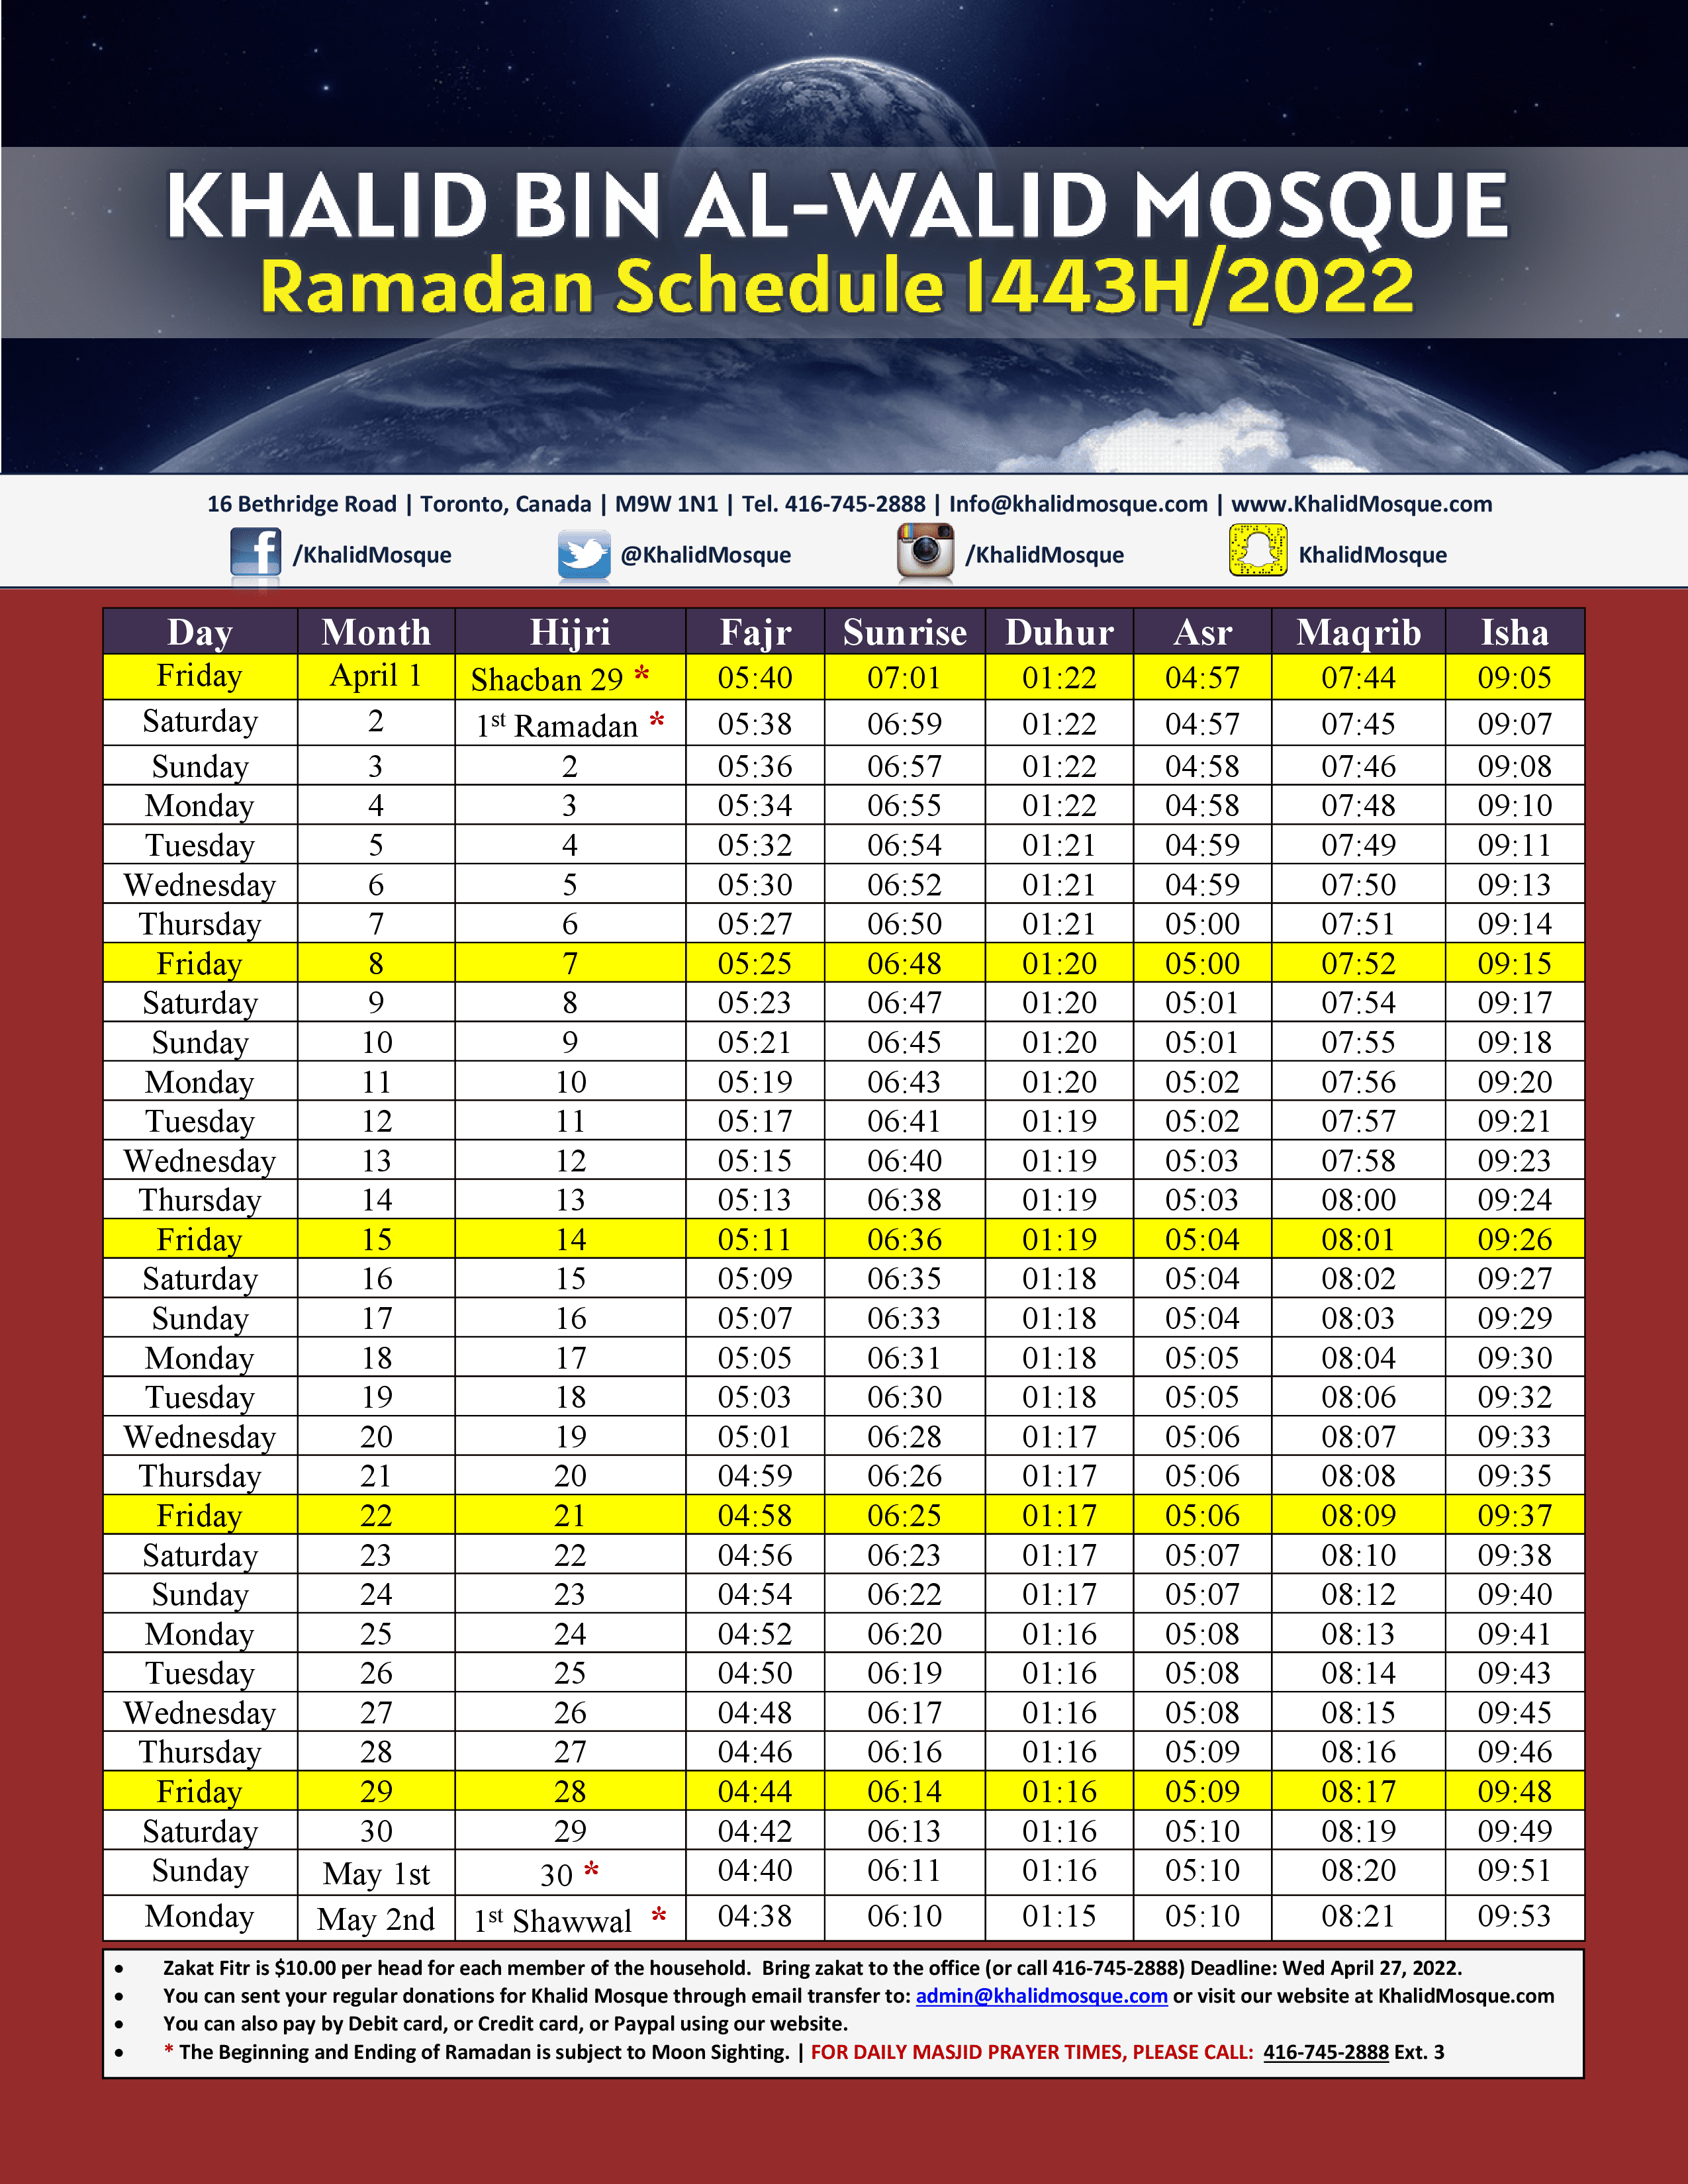 Ramadan Calendar 2022 Toronto Ahmadiyya.Ramadan Schedule 2022 Toronto Khalid Bin Al Walid Mosque Toronto Canada